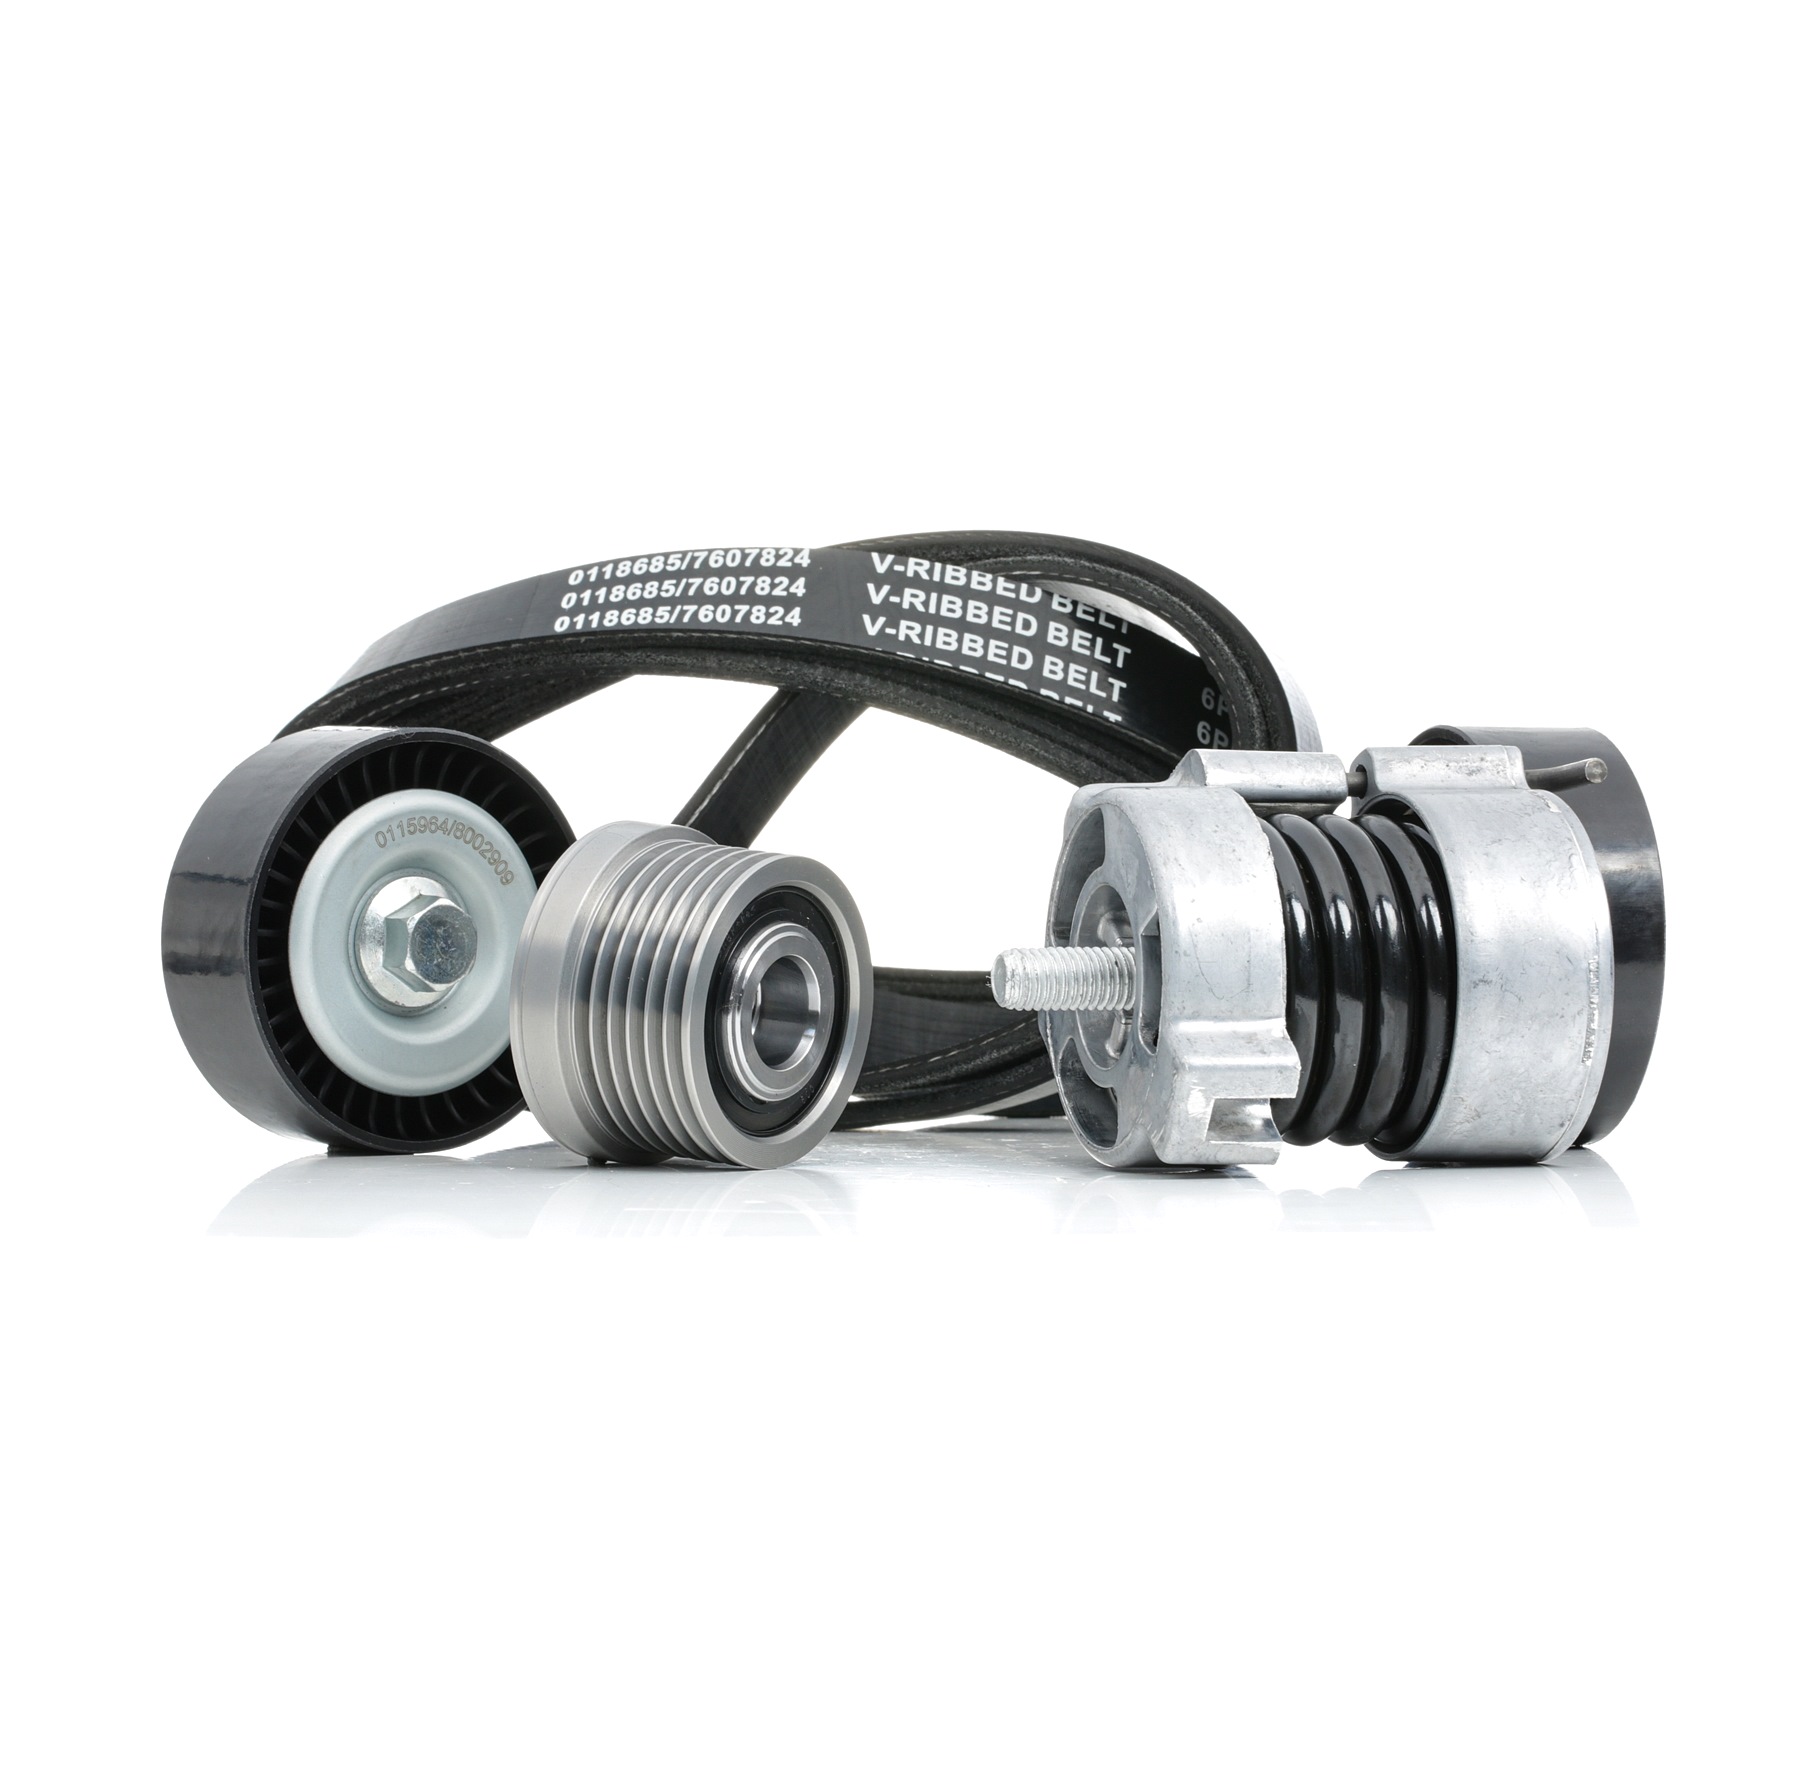 STARK SKRBS-1200713 V-Ribbed Belt Set Pulleys: with freewheel belt pulley, with tensioner arm, tensioner pulley